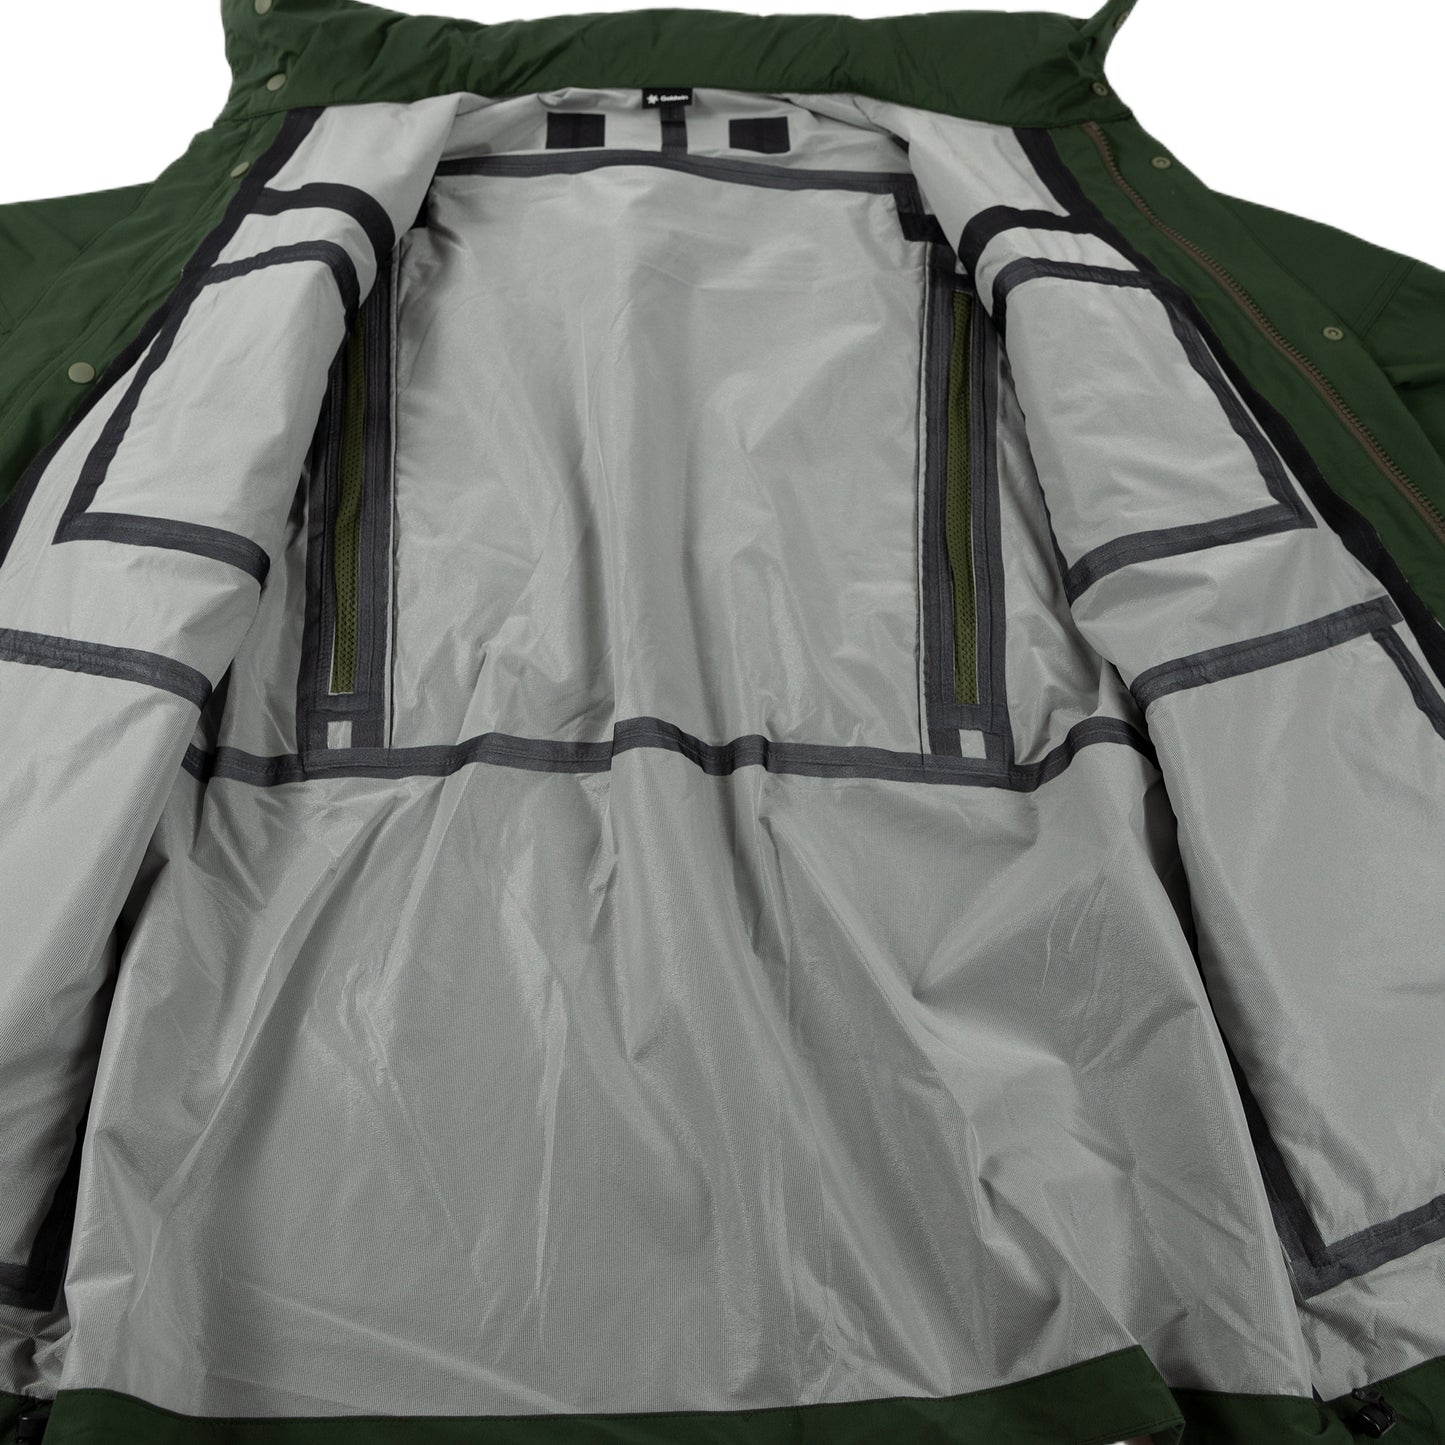 Goldwin Traveler Blouson in Cypress Green Outerwear sportwear hooded hood rain gear all weather lining